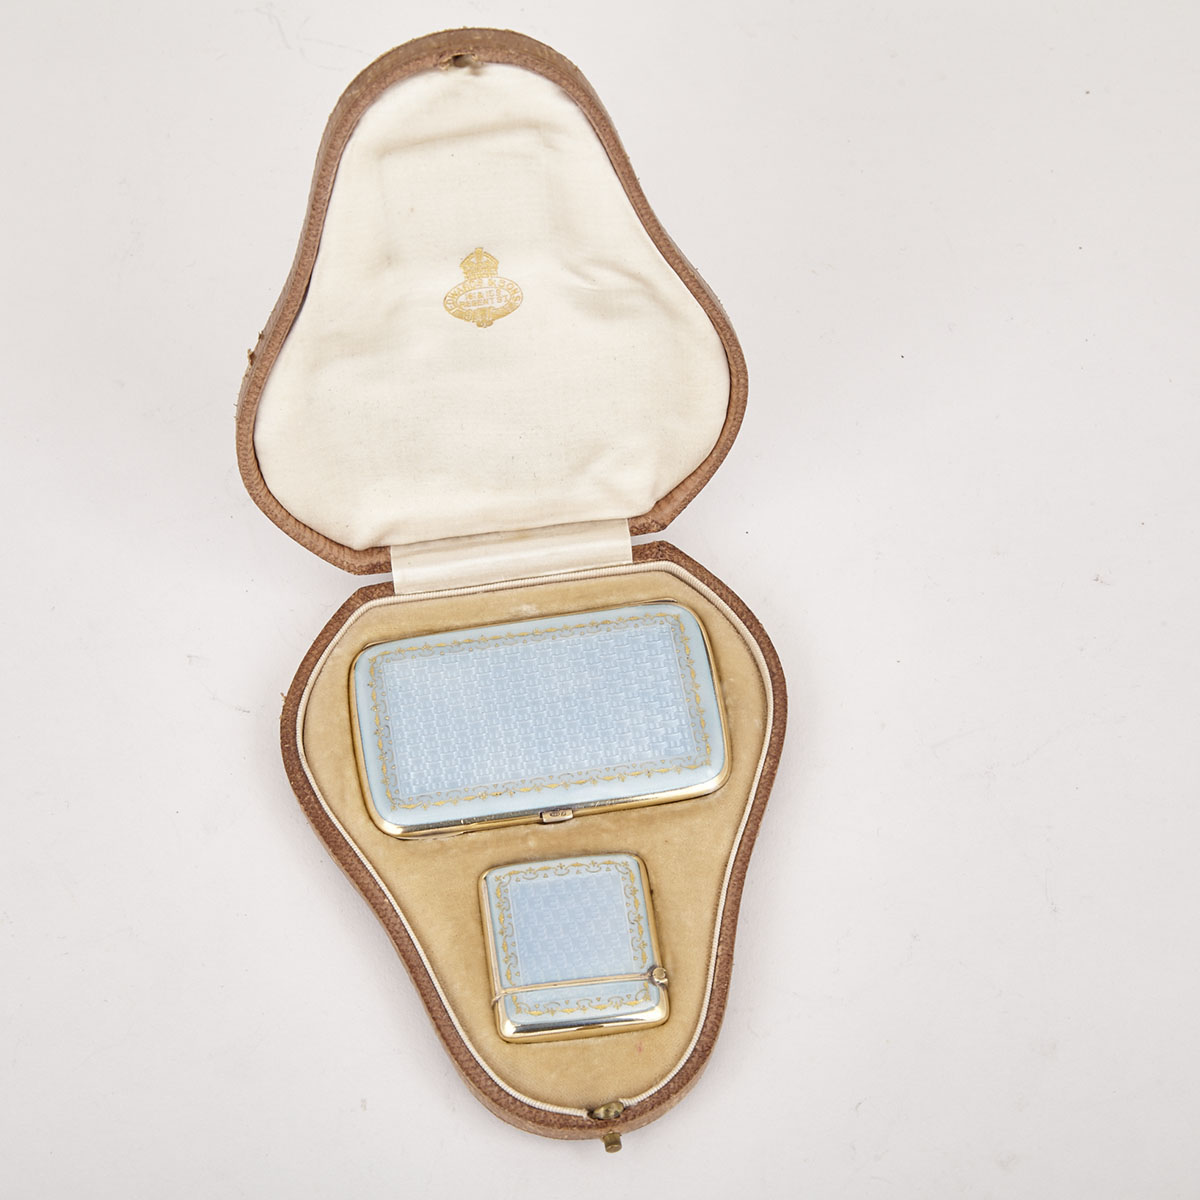 Continental Silver and  Pale Blue Guilloche Enamel Cigarette Case and Vesta Case, c.1912/13